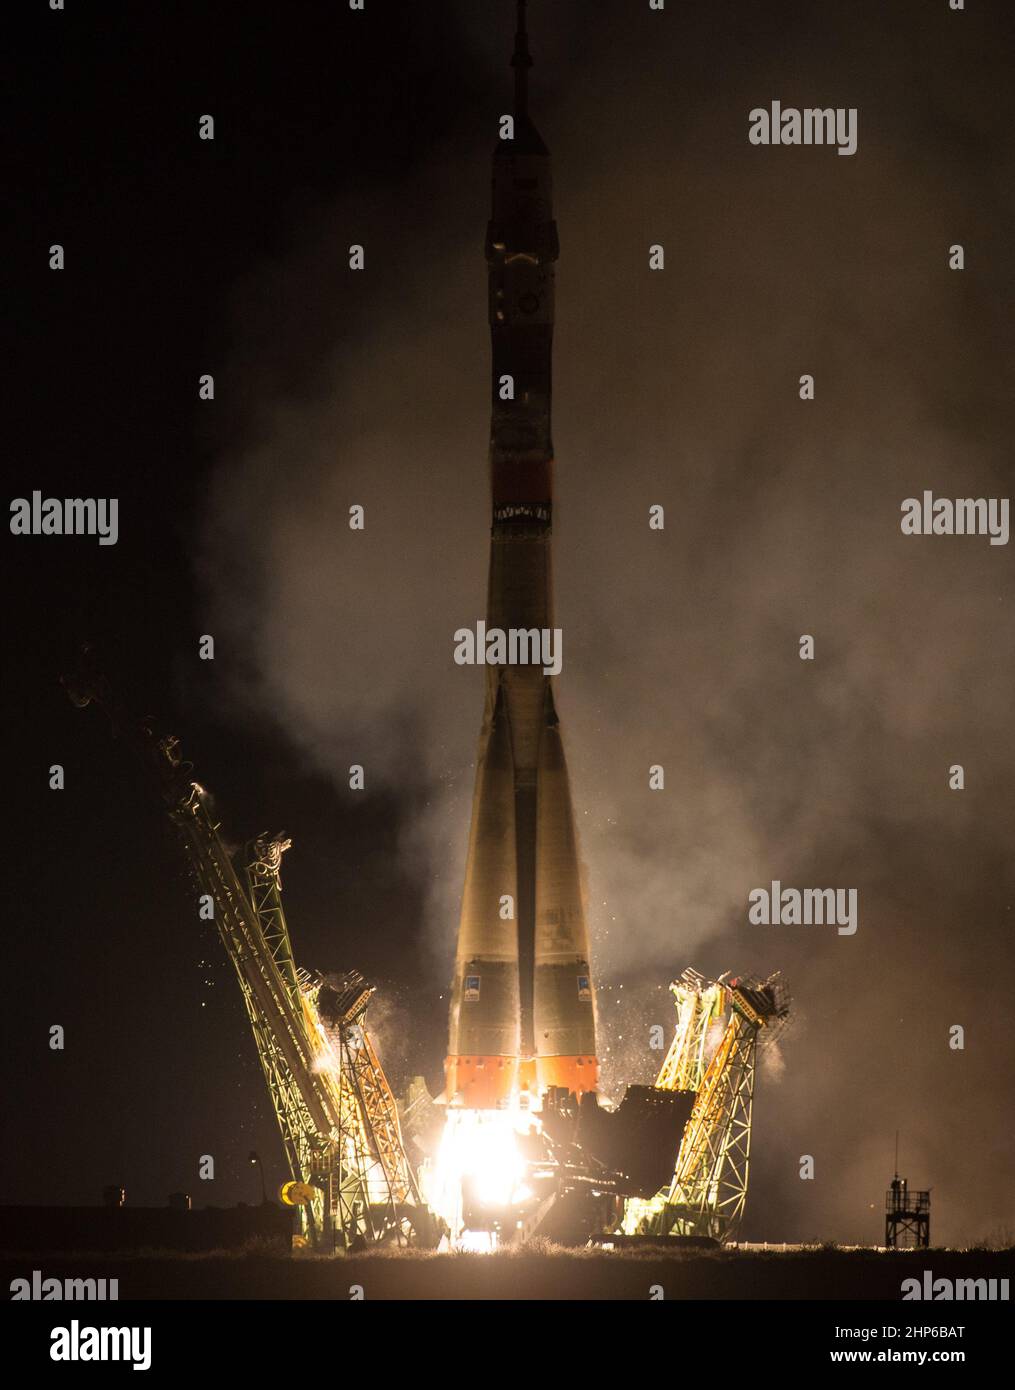 Die Sojus TMA-20M-Rakete startet am Samstag, 19. März 2016, vom Kosmodrom Baikonur in Kasachstan mit Expedition 47 Sojus-Kommandant Alexey Ovchinin von Roskosmos, Flugingenieur Jeff Williams von der NASA, Und der Flugingenieur Oleg Skripochka von Roskosmos in die Umlaufbahn, um ihre fünfeinhalb-monatige Mission auf der Internationalen Raumstation zu beginnen. Stockfoto